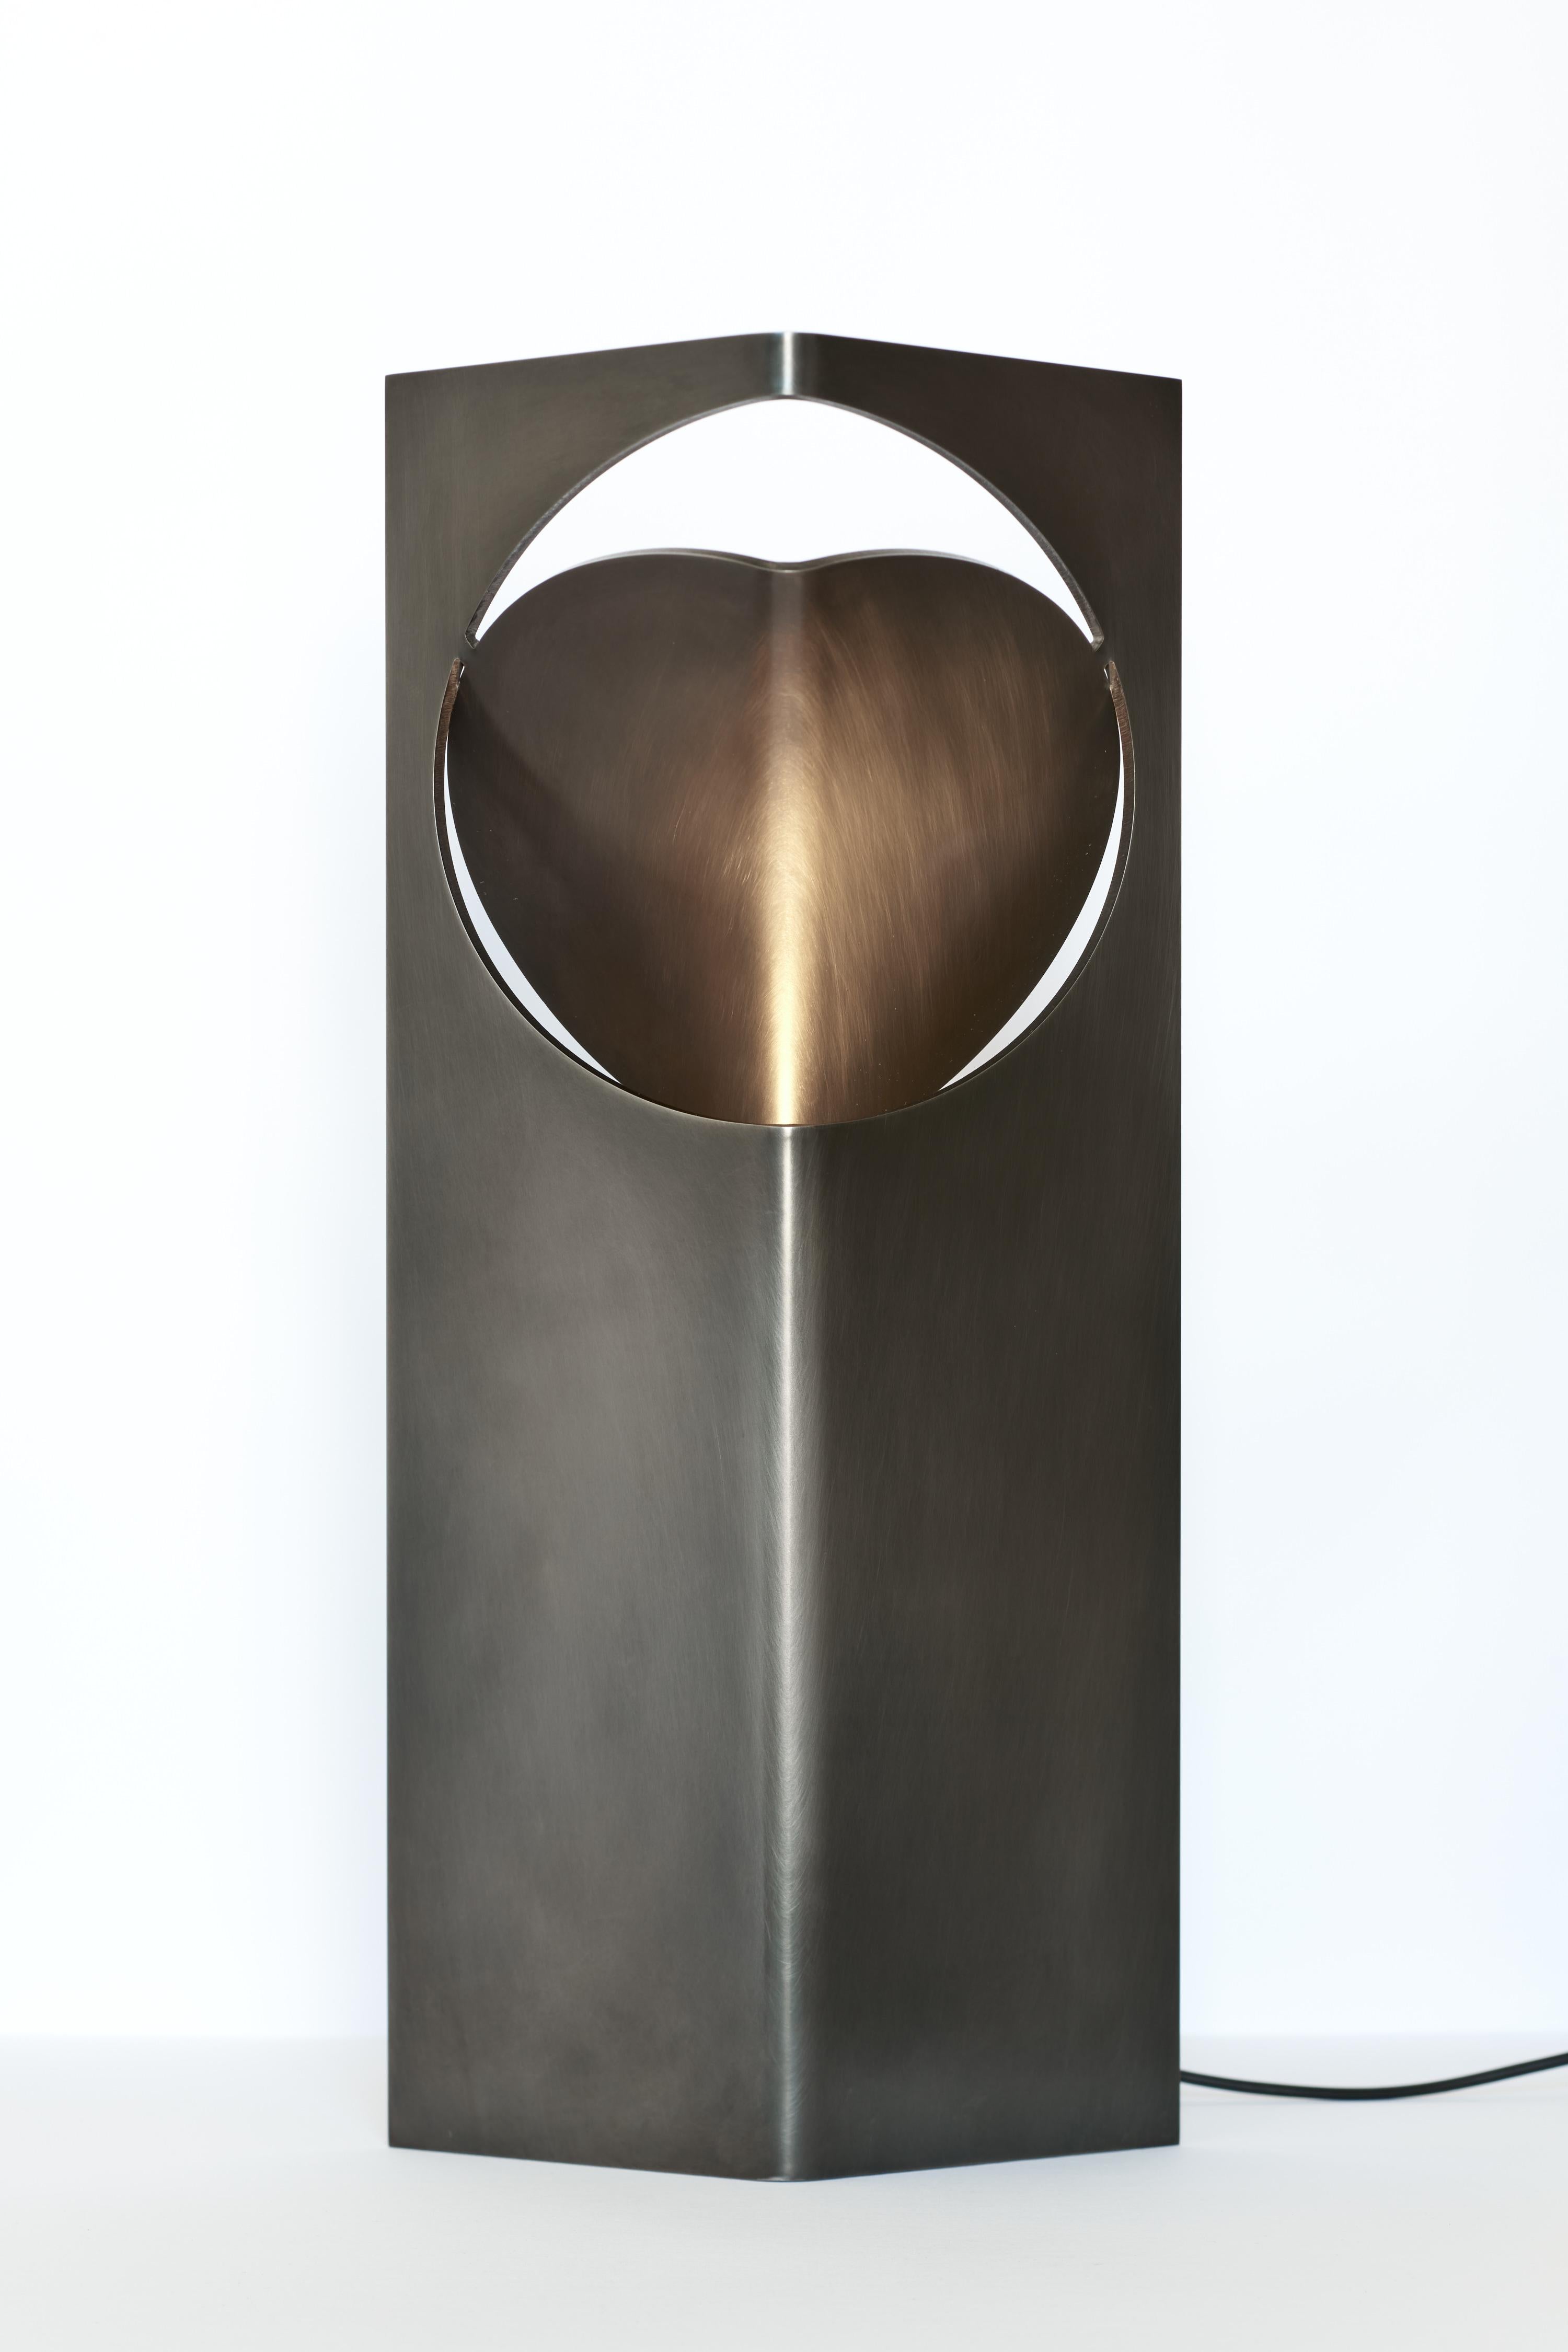 La colección ONE Table Light de Frank Penders es una serie de lámparas que combinan una ingeniosa simplicidad de formas con una riqueza de luz y textura de materiales. Con un diseño de acero inoxidable cepillado a mano, esta lámpara de mesa es el